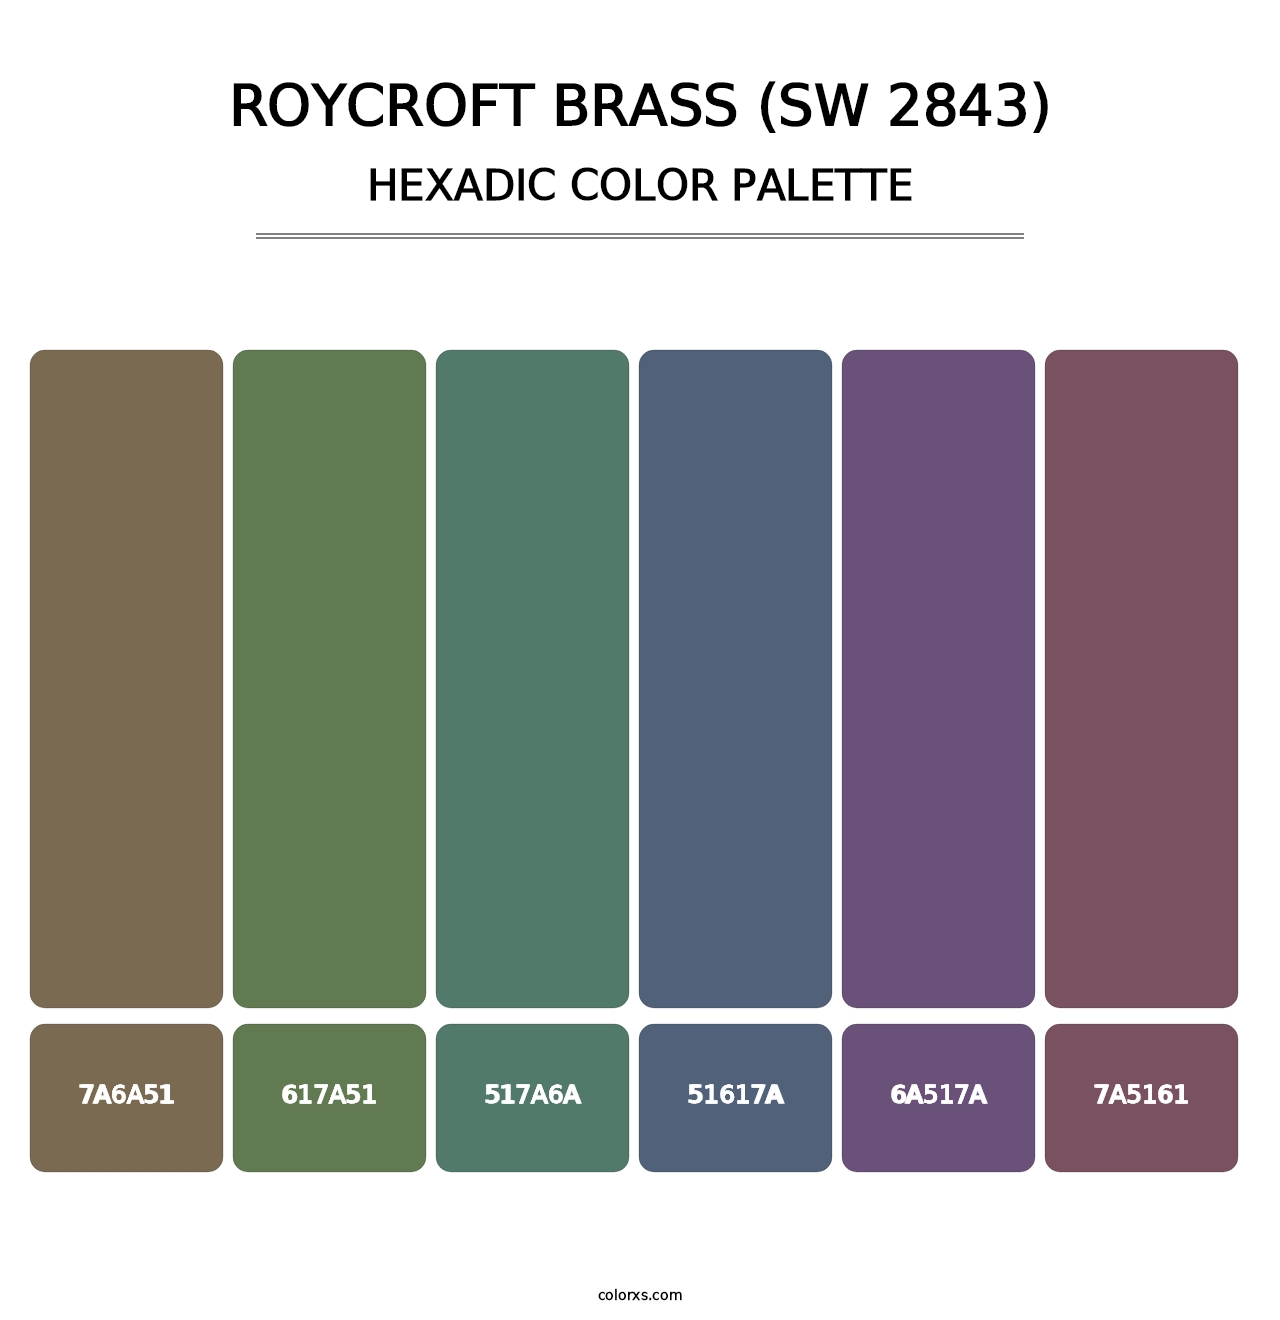 Roycroft Brass (SW 2843) - Hexadic Color Palette